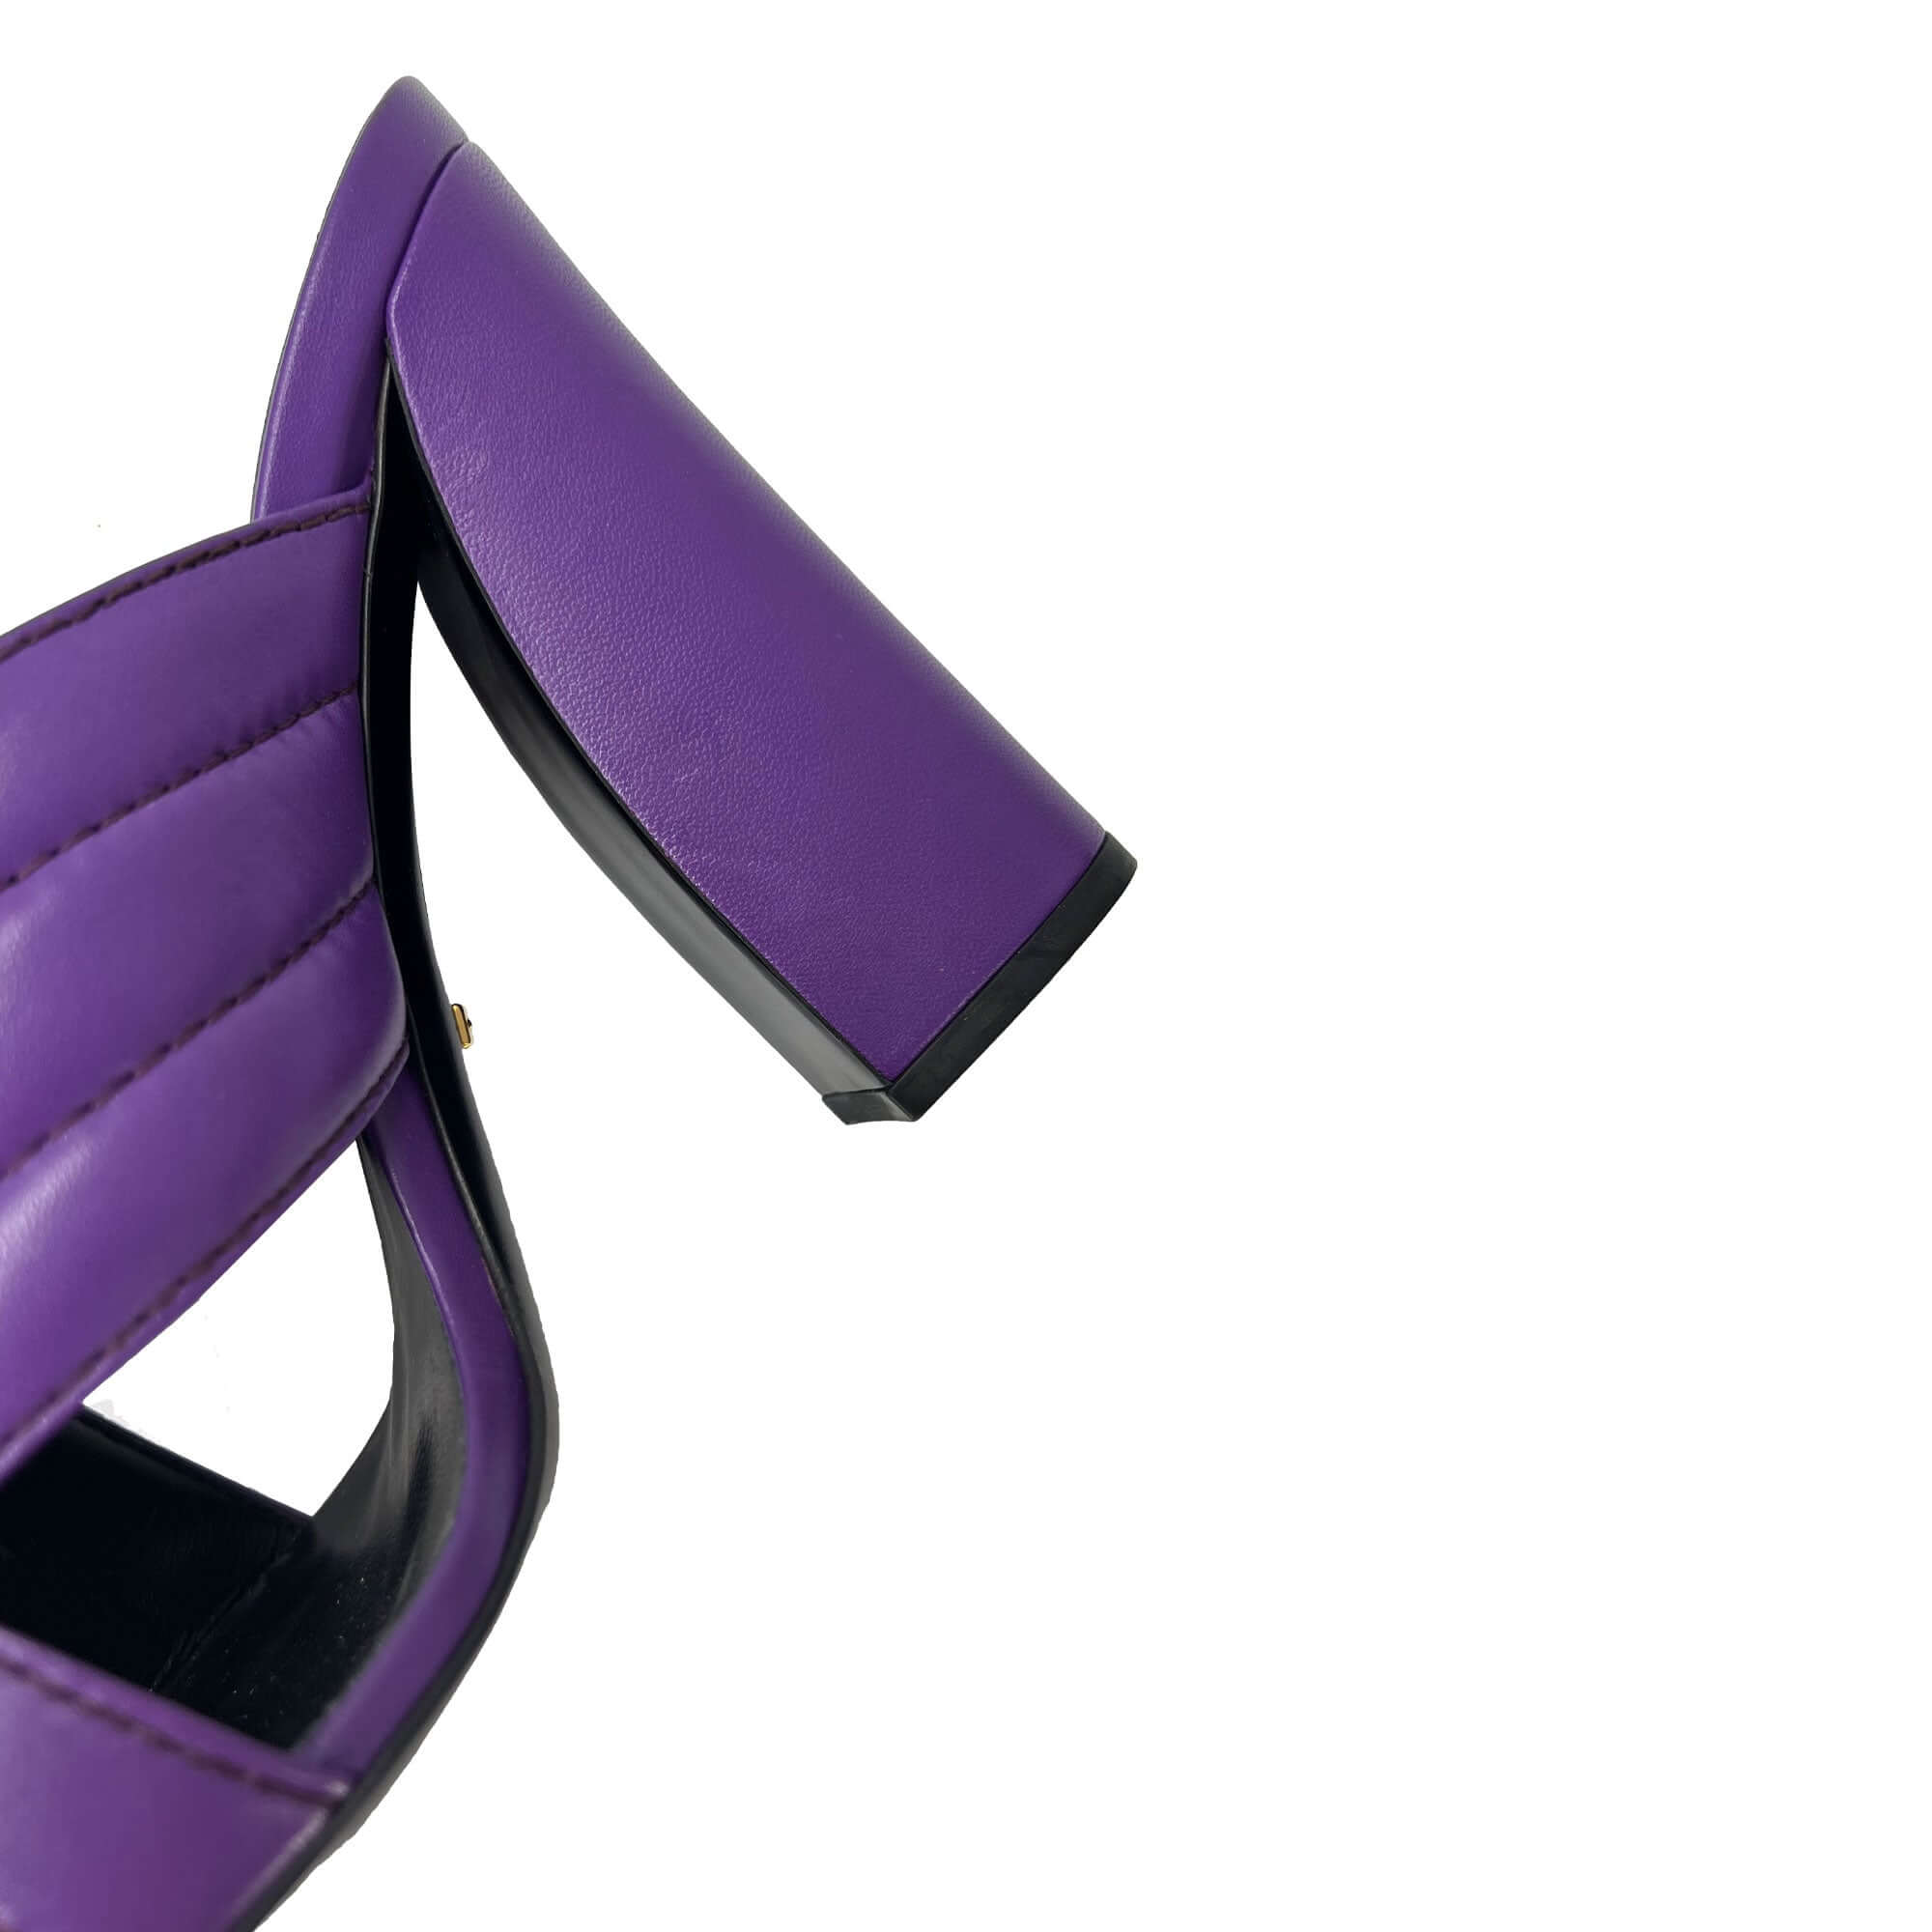 Gucci purple leather block crisscorss mule sandals